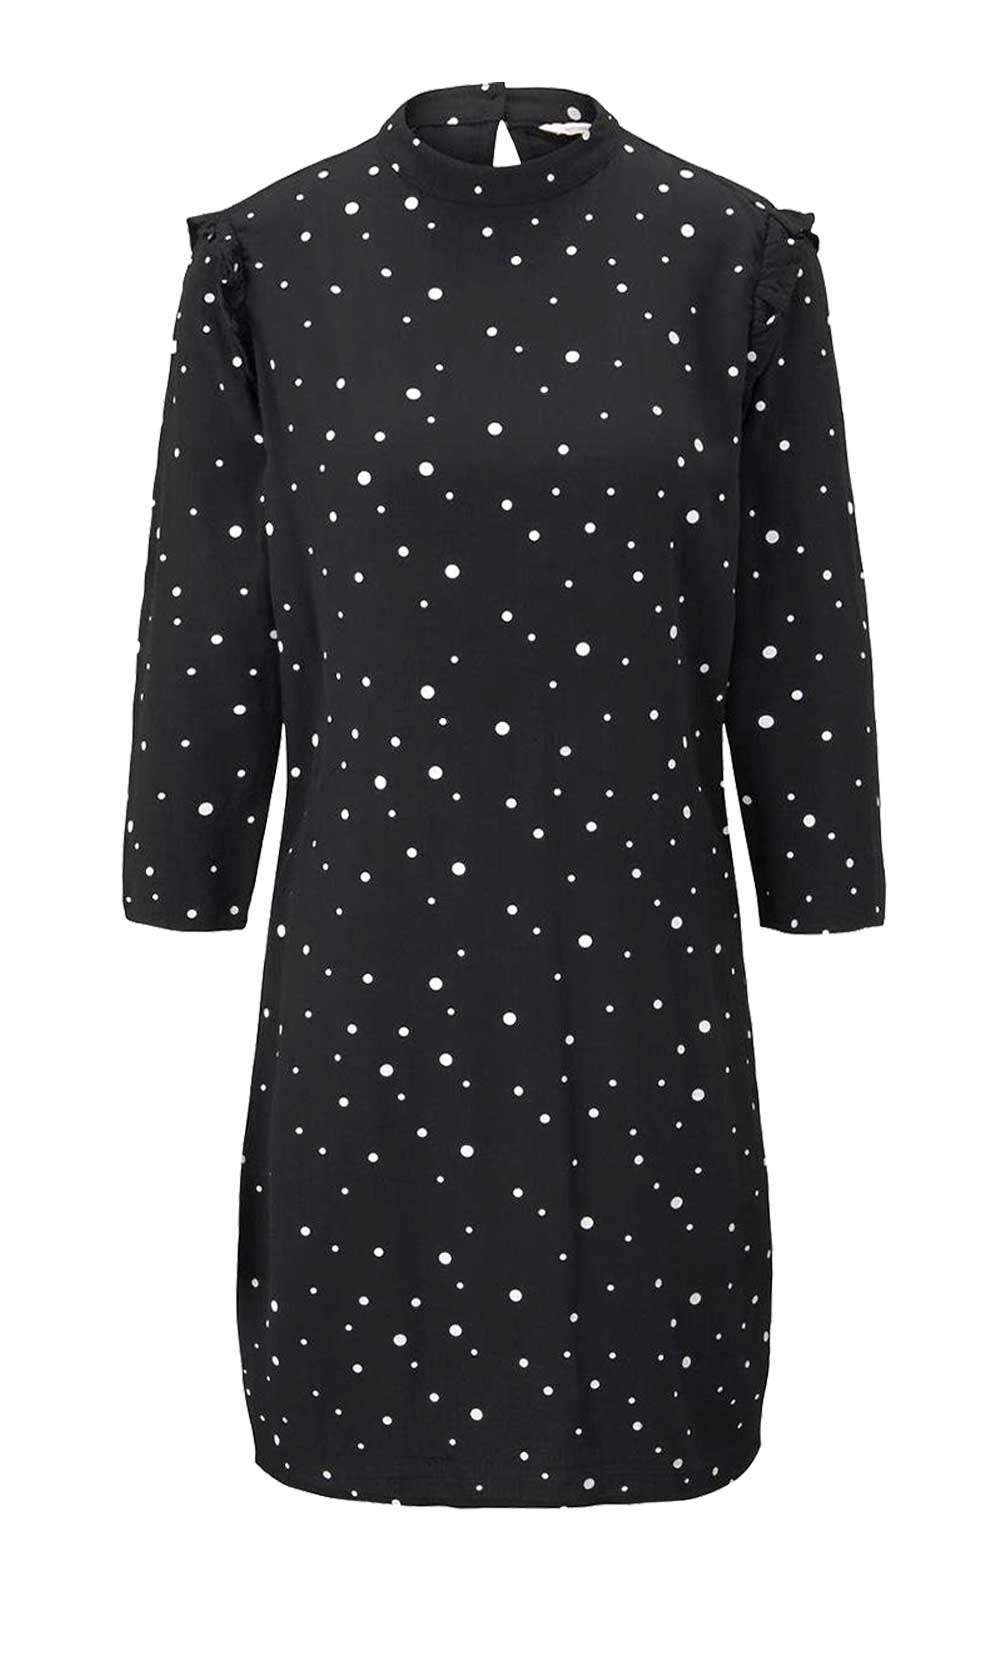 TOM TAILOR DENIM Damen Marken-Kleid mit Rüschen, schwarz-weiß